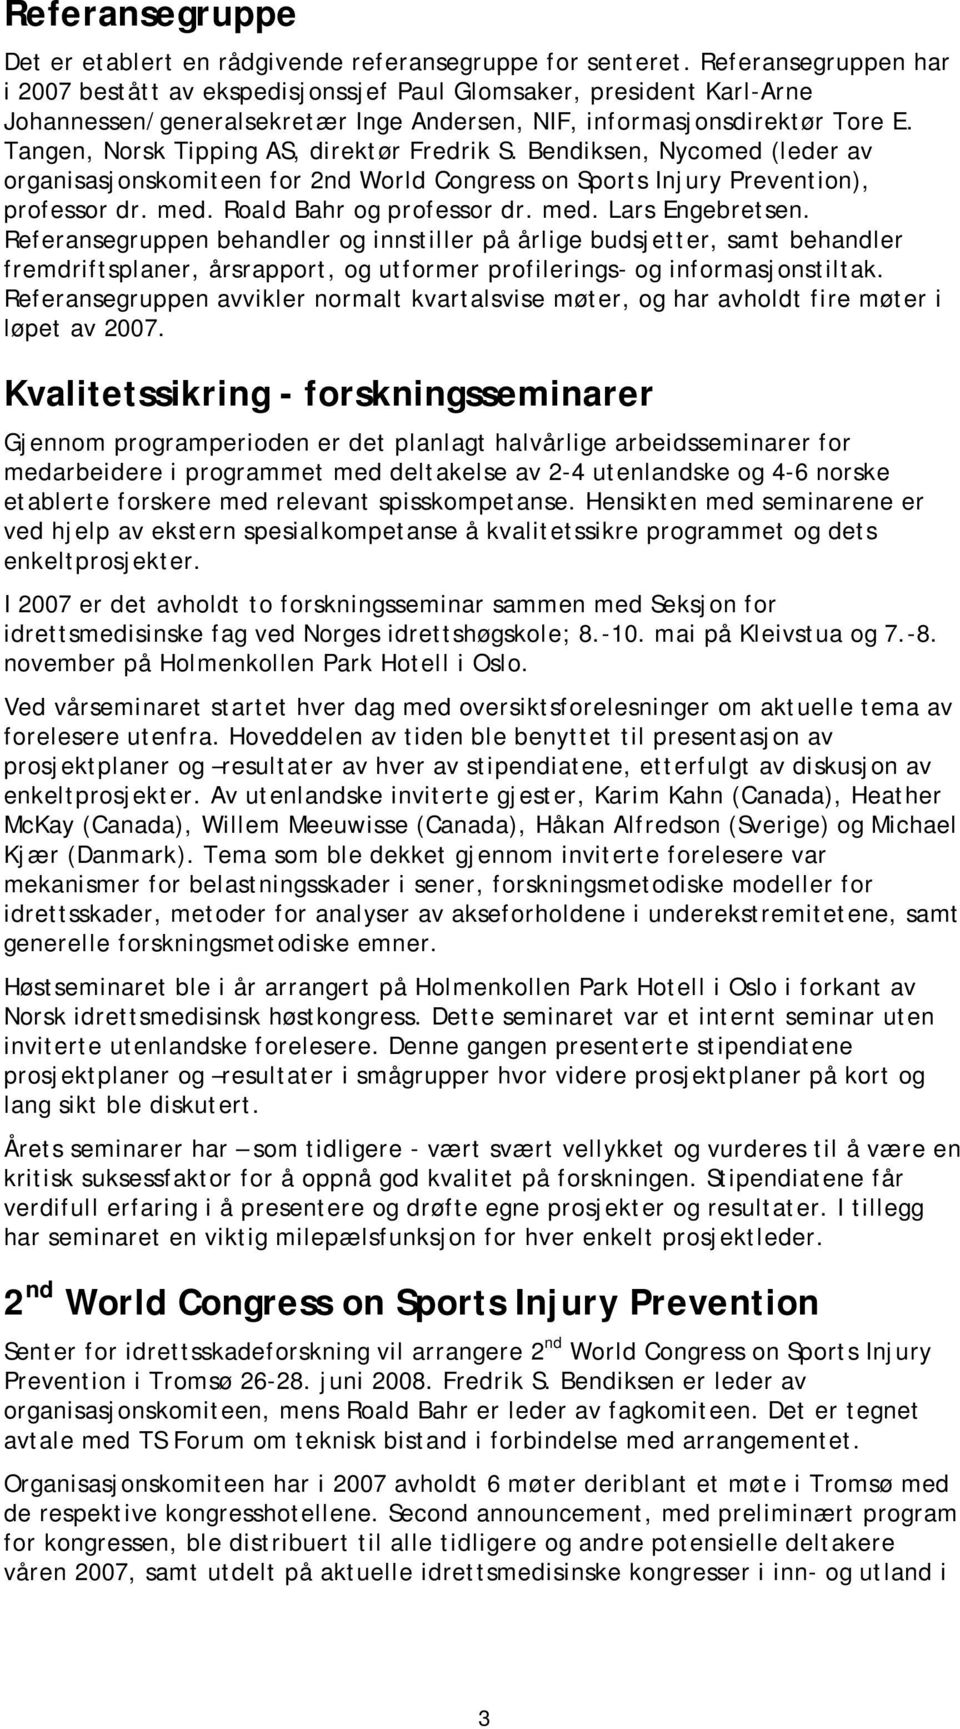 Tangen, Norsk Tipping AS, direktør Fredrik S. Bendiksen, Nycomed (leder av organisasjonskomiteen for 2nd World Congress on Sports Injury Prevention), professor dr. med. Roald Bahr og professor dr.